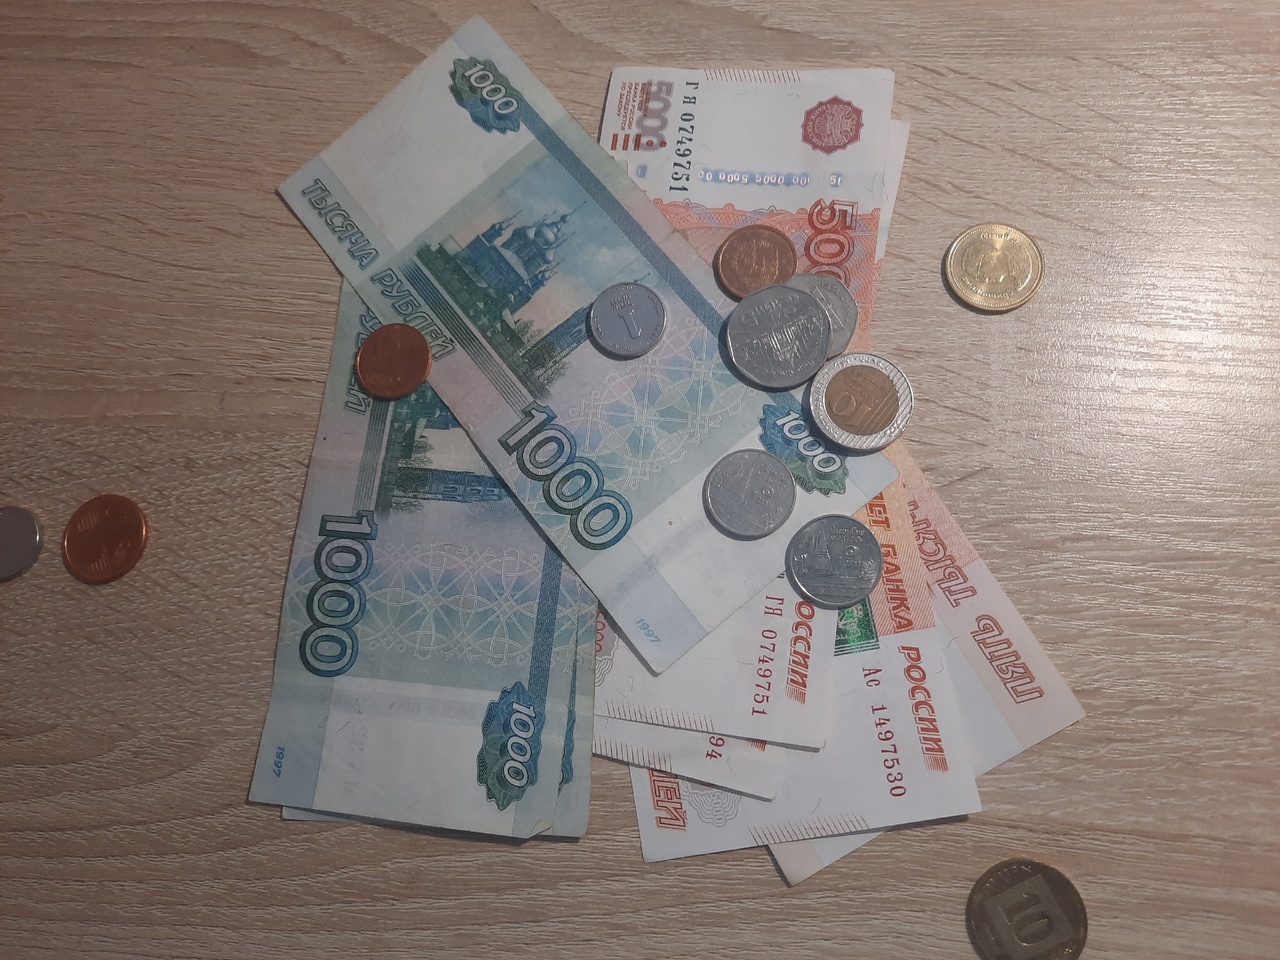  С 5 июля к пенсии добавят 2710 рублей. Касается всех до единого - и работающих, и неработающих 